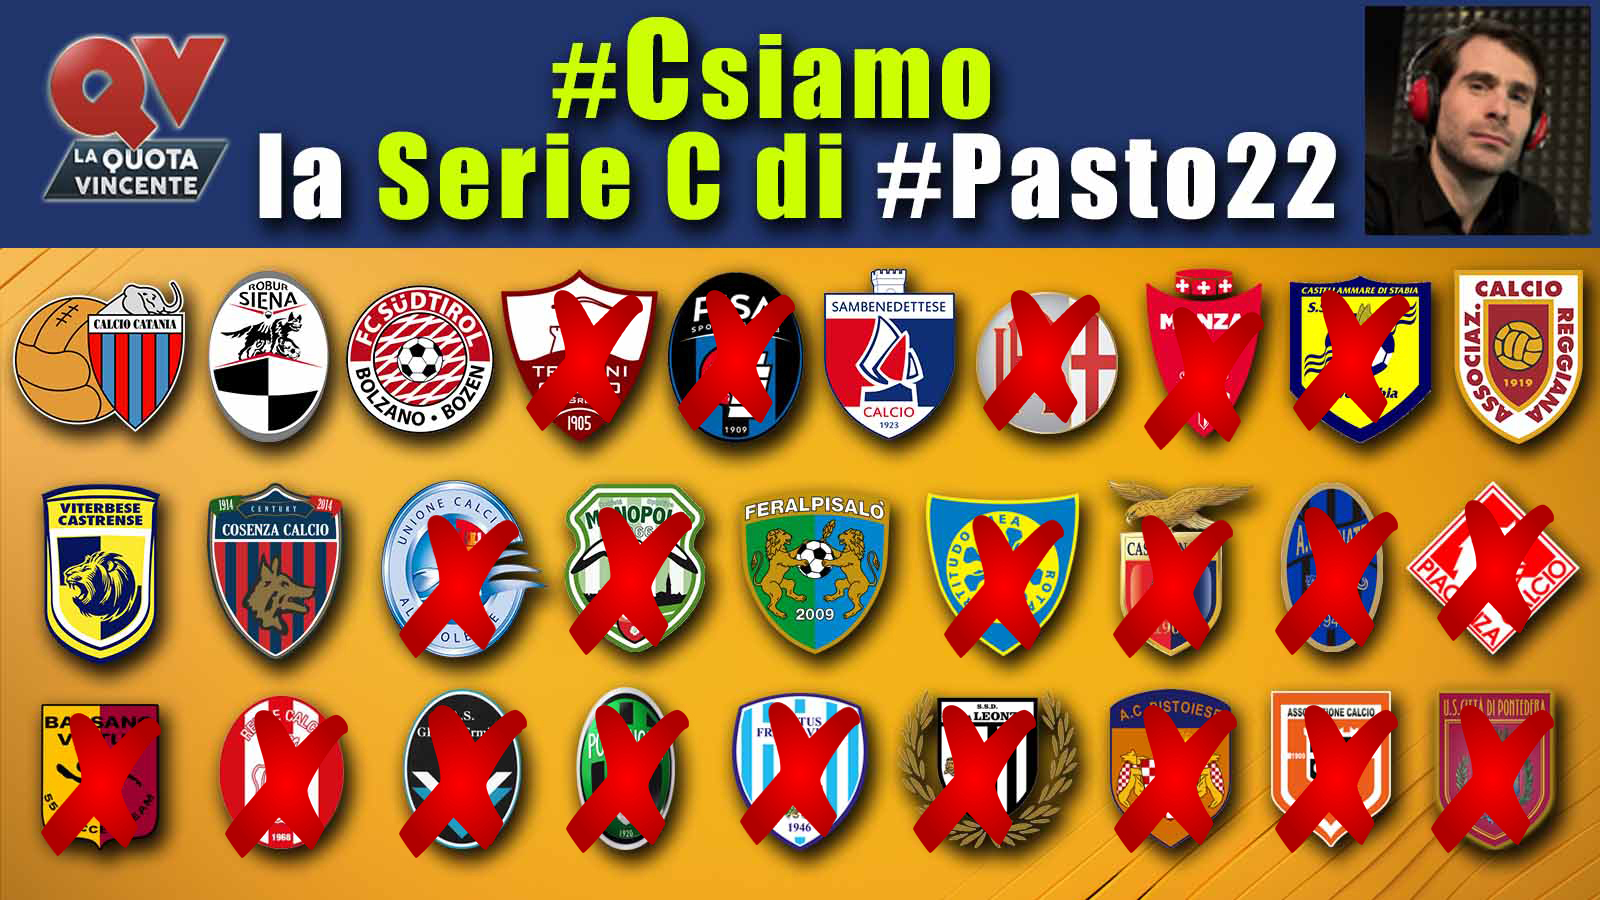 Pronostici Serie C 30 maggio: #Csiamo, il blog di #Pasto22 speciale playoff